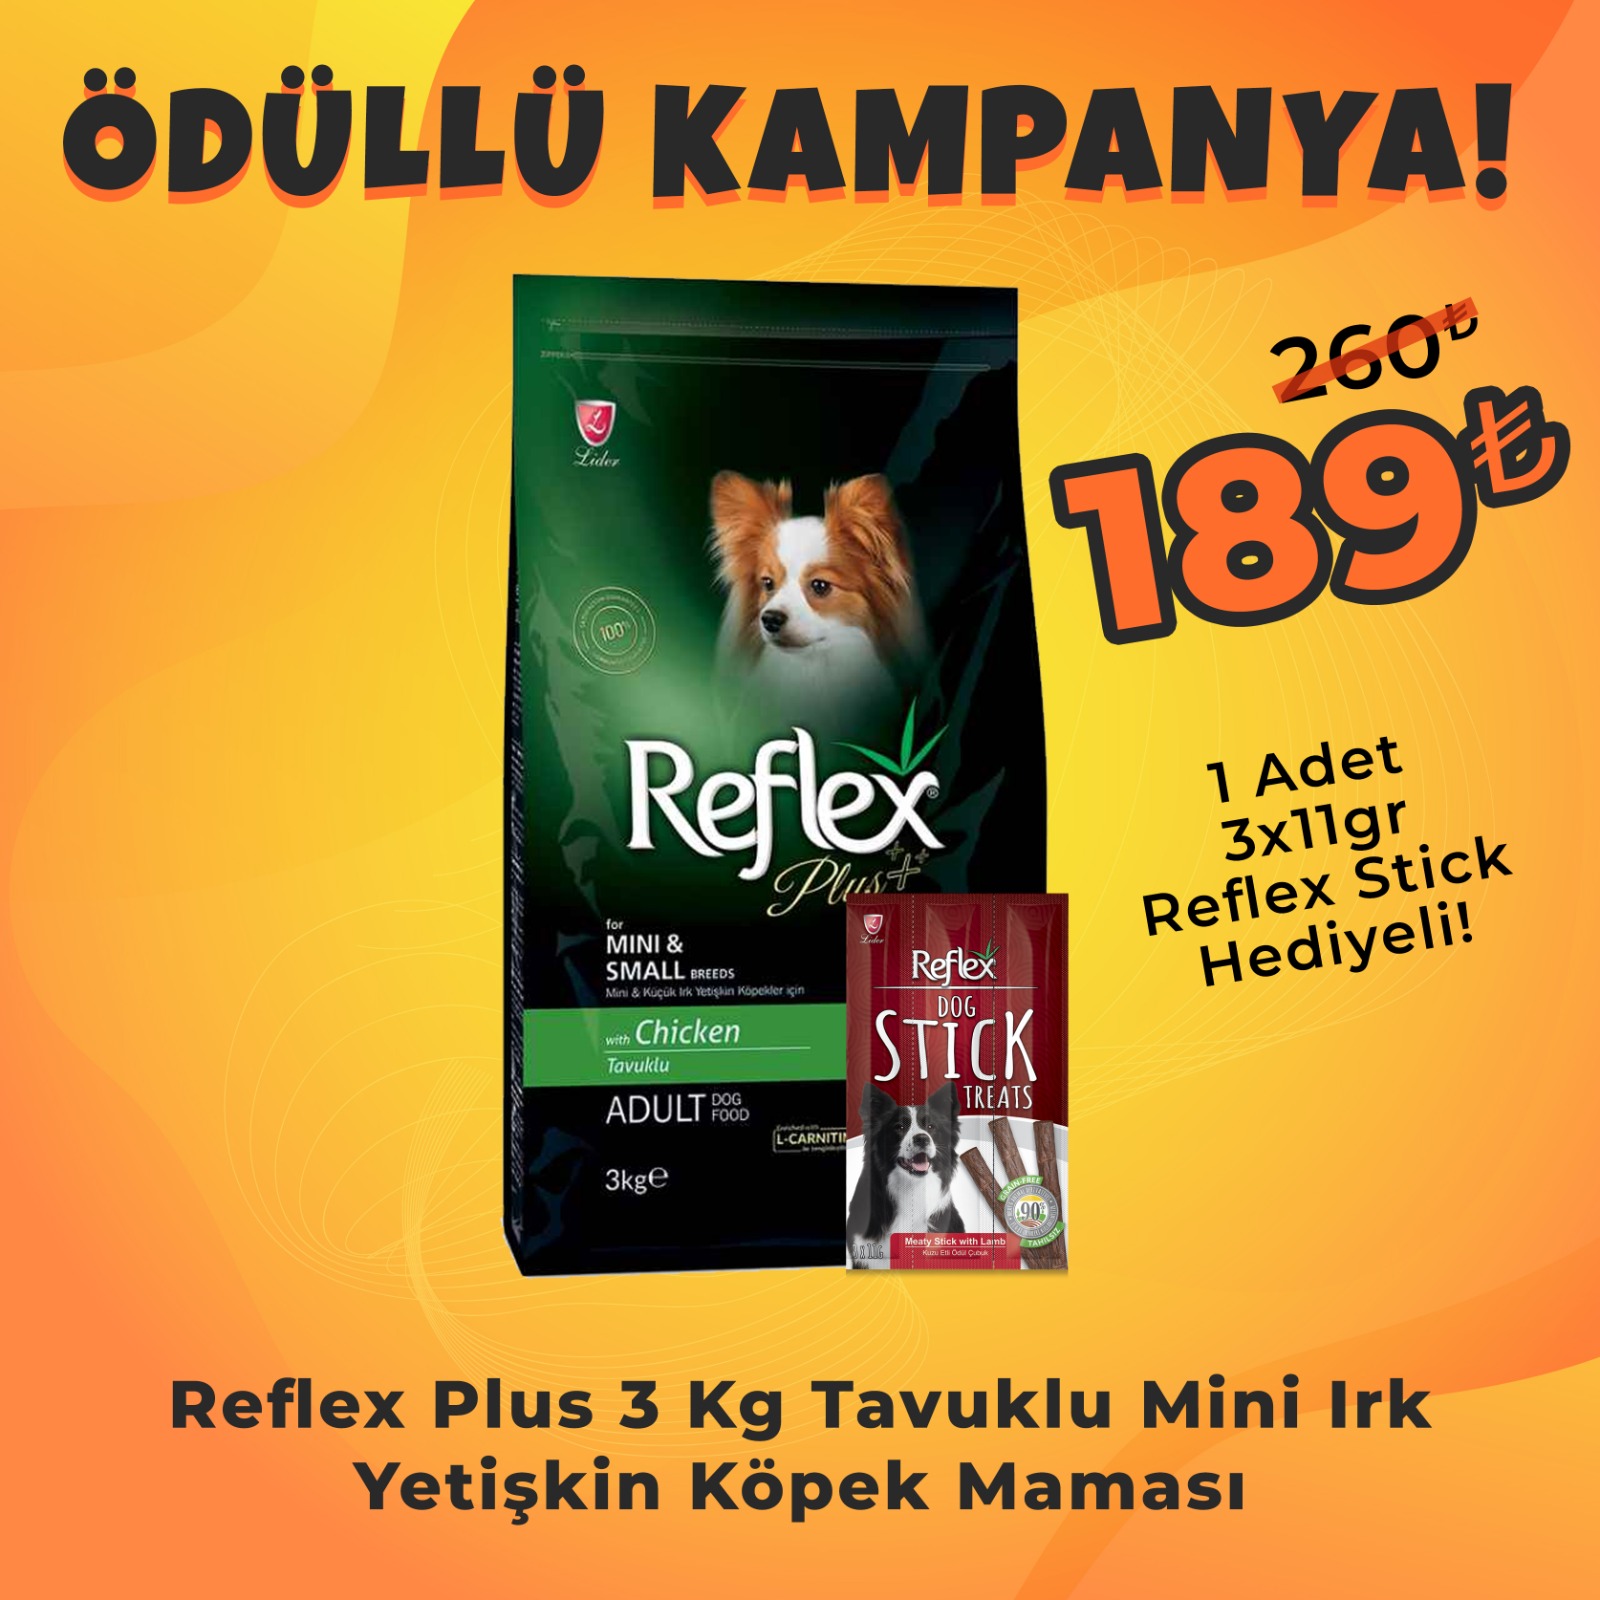 Reflex Plus Küçük Irk Tavuklu Yetişkin Köpek Maması 3kg + Reflex Köpek Stick Ödül Hediyeli 3x11 Gr